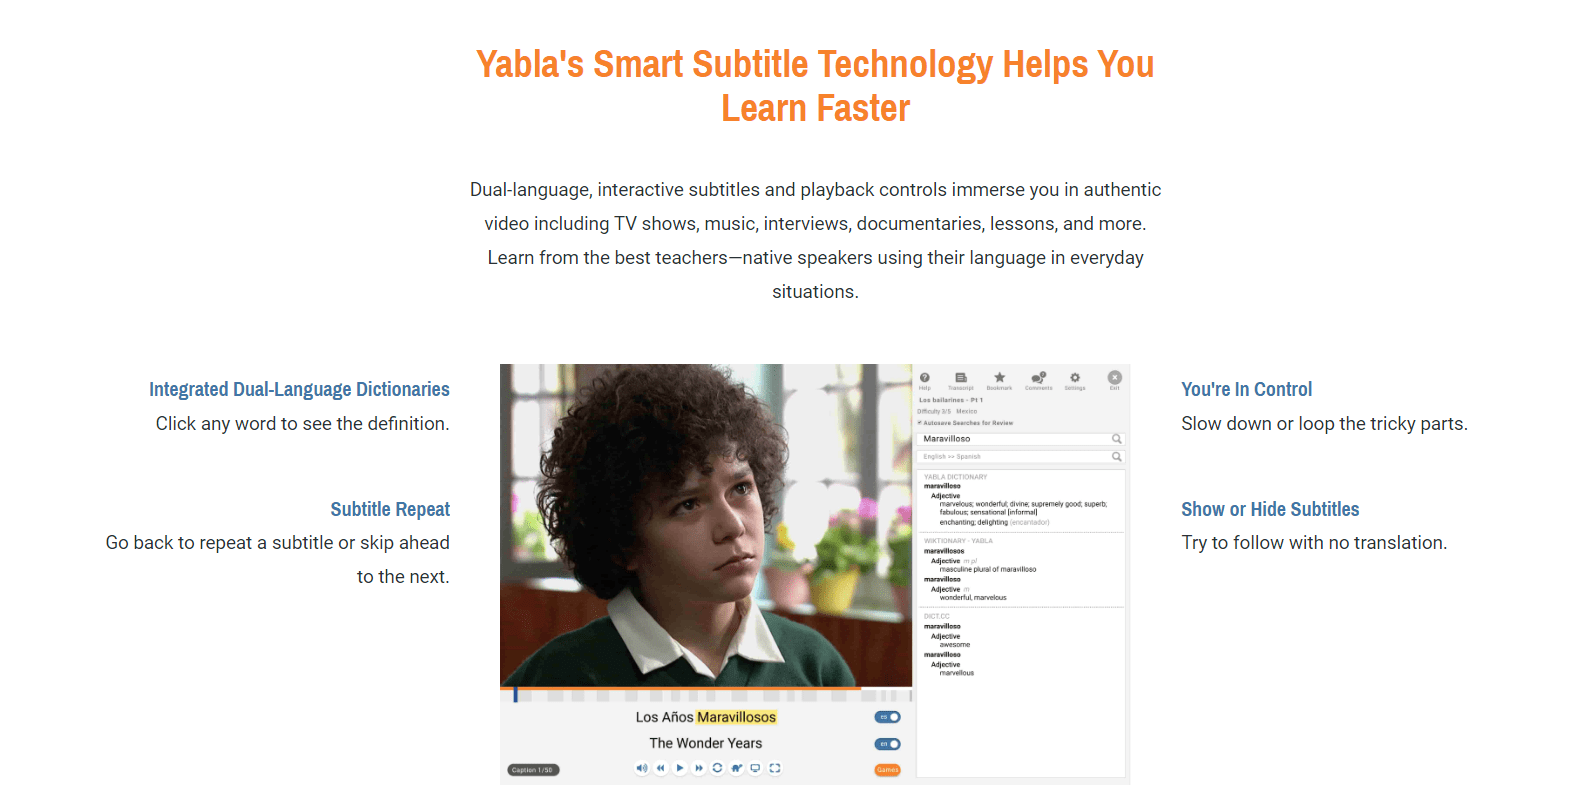 Yabla smart technology